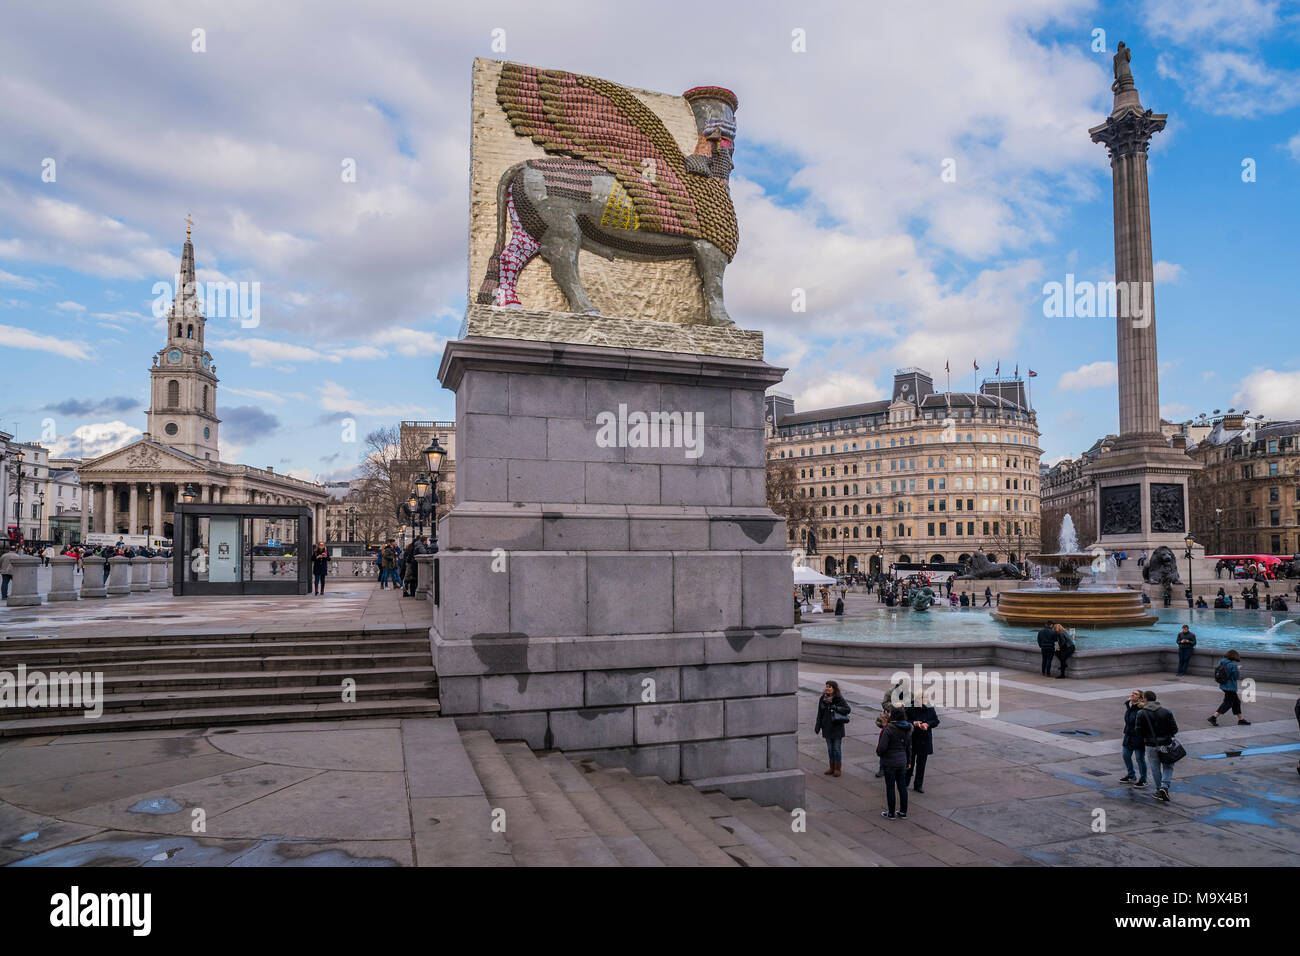 Londres, Reino Unido. 28 de marzo de 2018. El enemigo invisible, no debería  existir, la obra de arte más reciente para el cuarto plinto de Trafalgar  Square, del artista Michael Rakowitz. Está